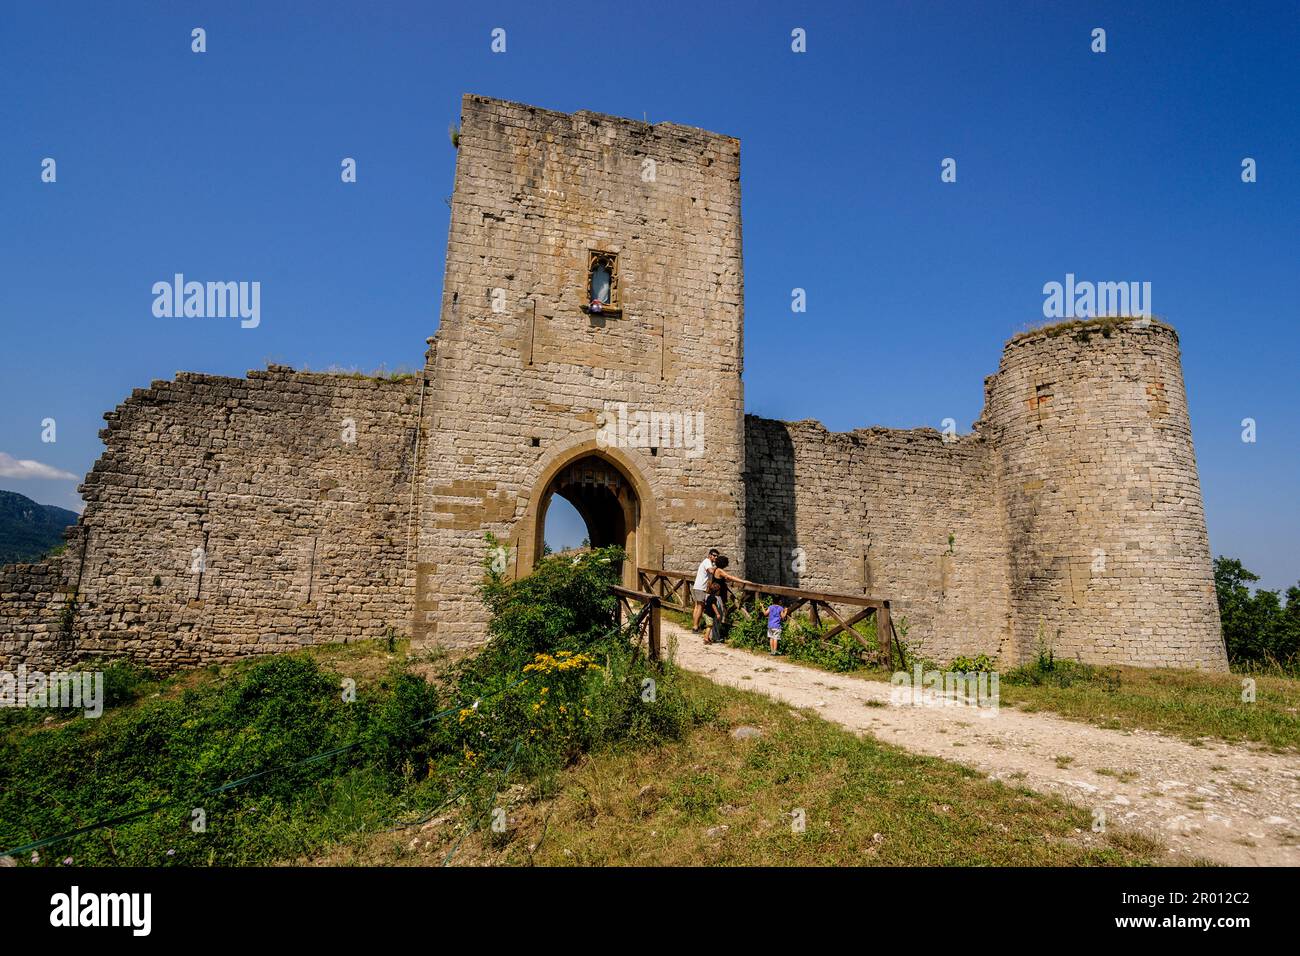 château de Puivert, 13th siècle, Château cathare situé dans le village de Puivert, dans le département de l'Aude, Languedoc-Roussillon, Pyrénées orientales, FR Banque D'Images